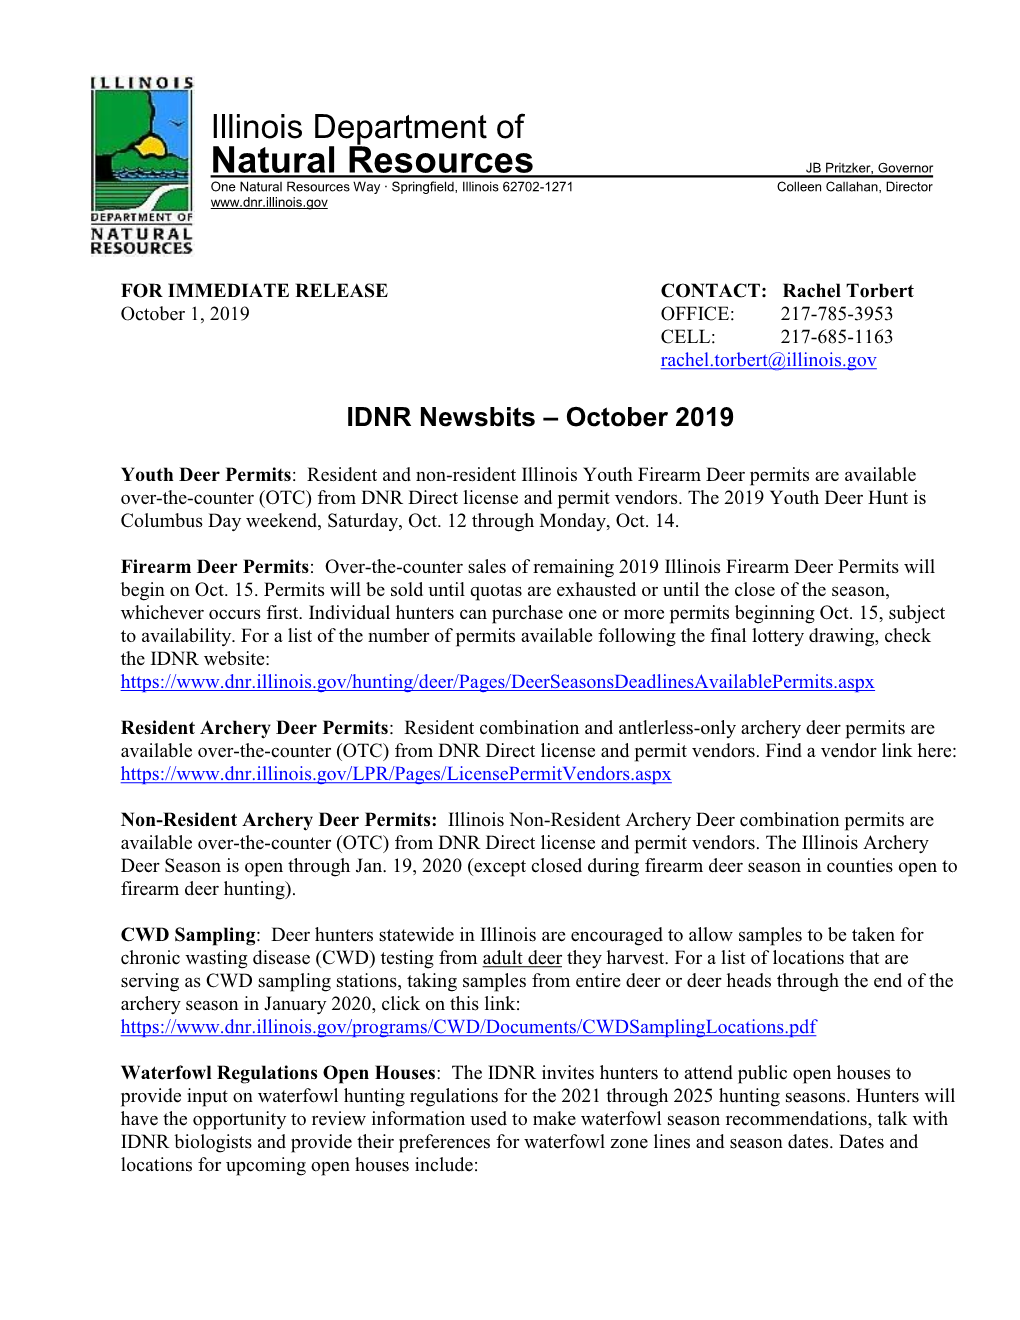 IDNR Newsbits – October 2019